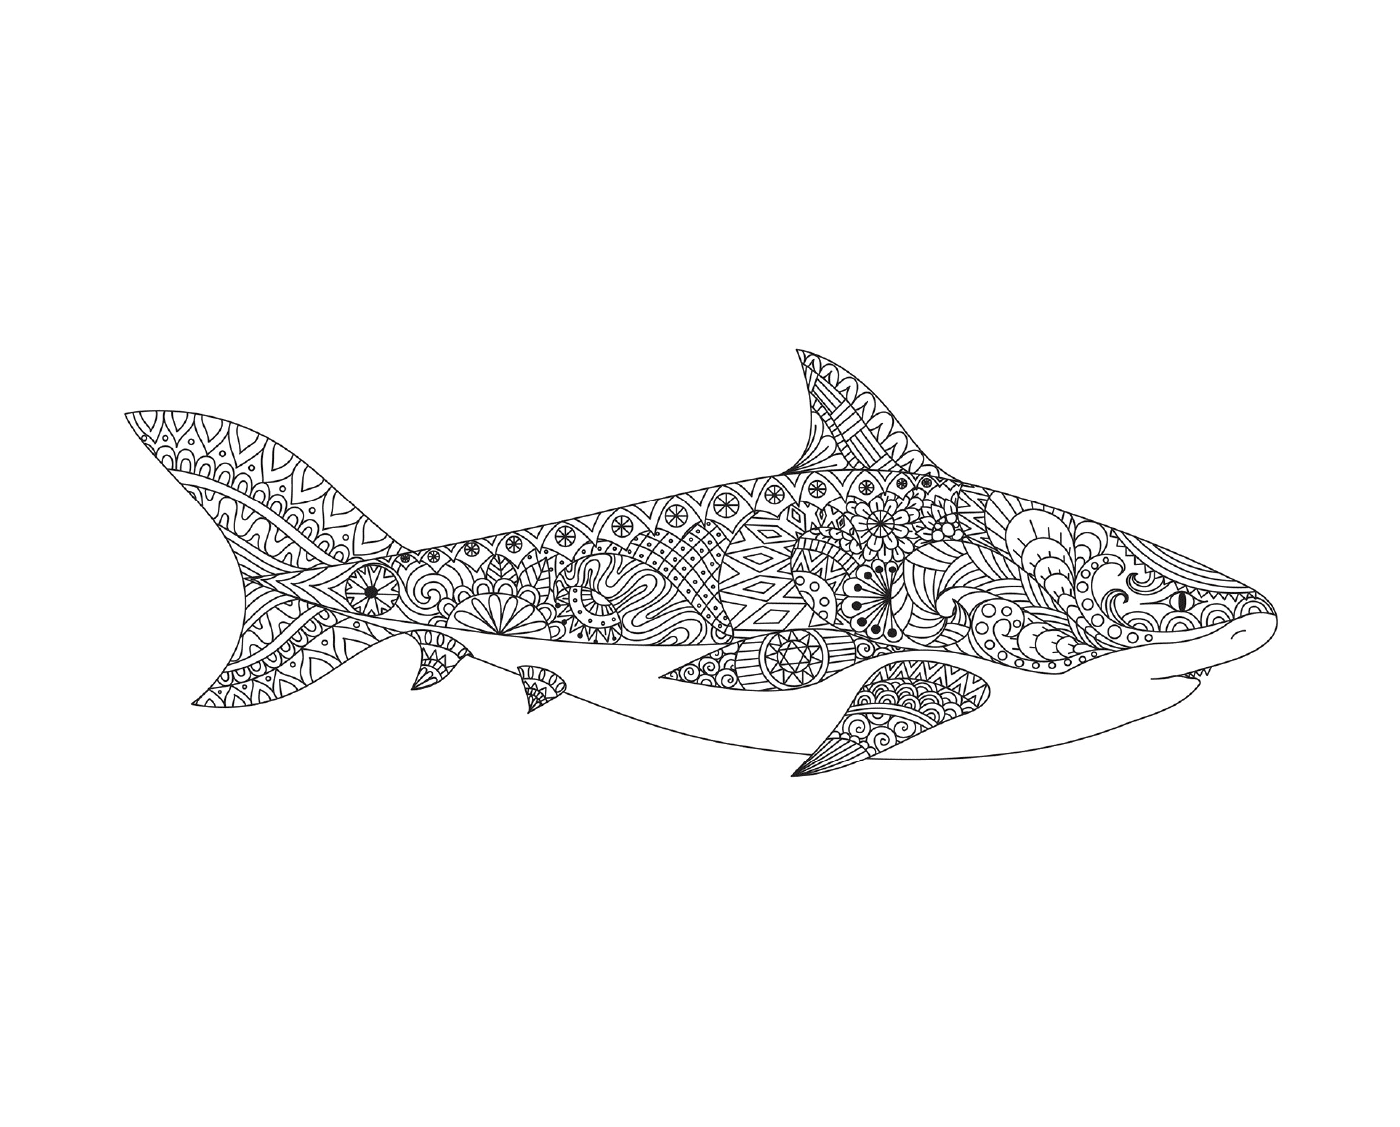  张开嘴的成年鲨鱼的纹身表示 